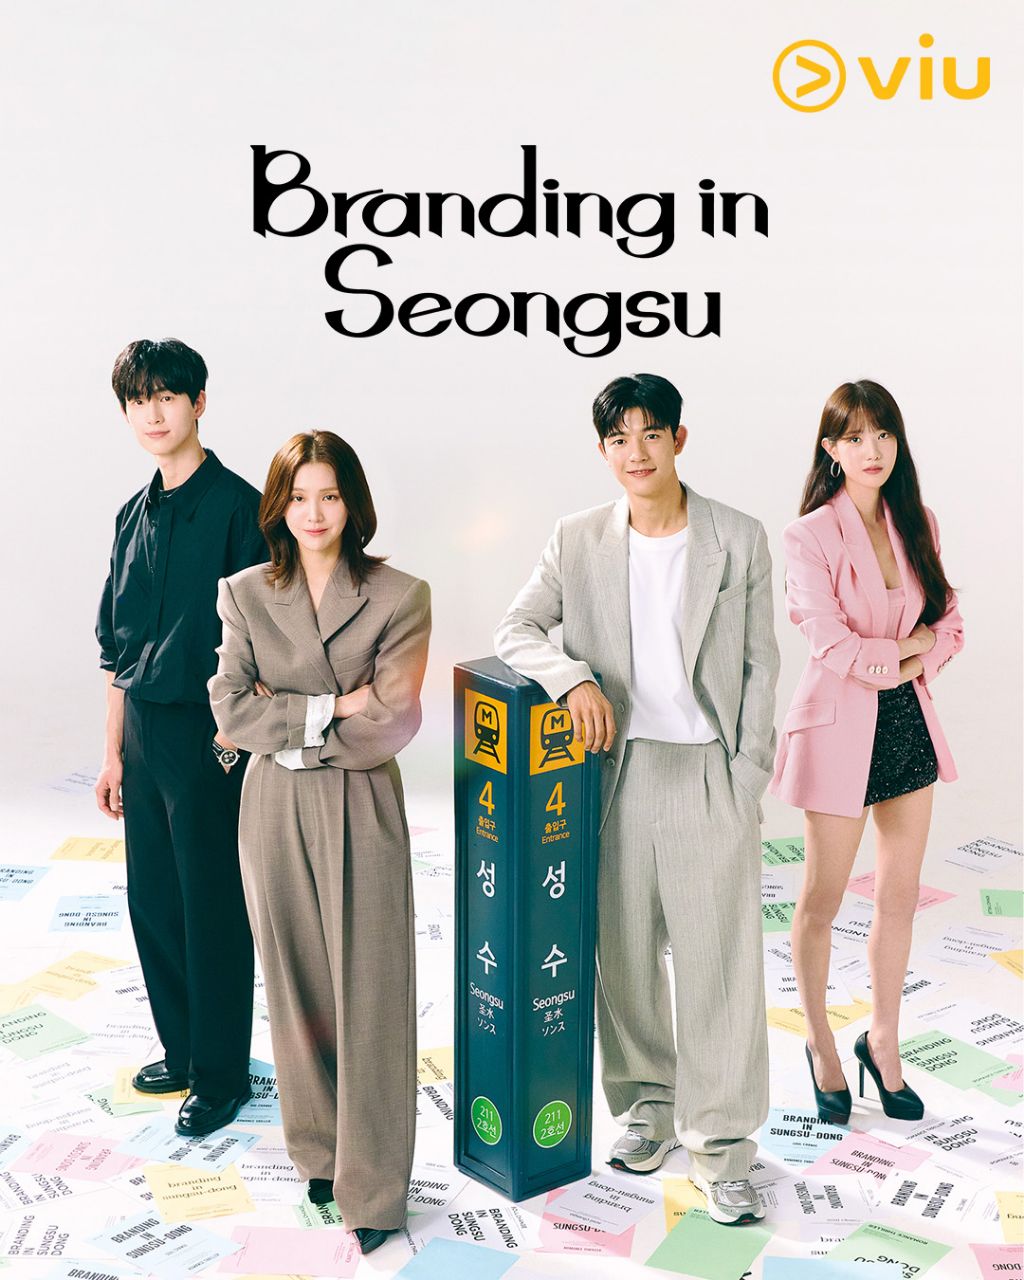 مسلسل العلامة التجارية في سيونغسو Branding in Seongsu الحلقة 17